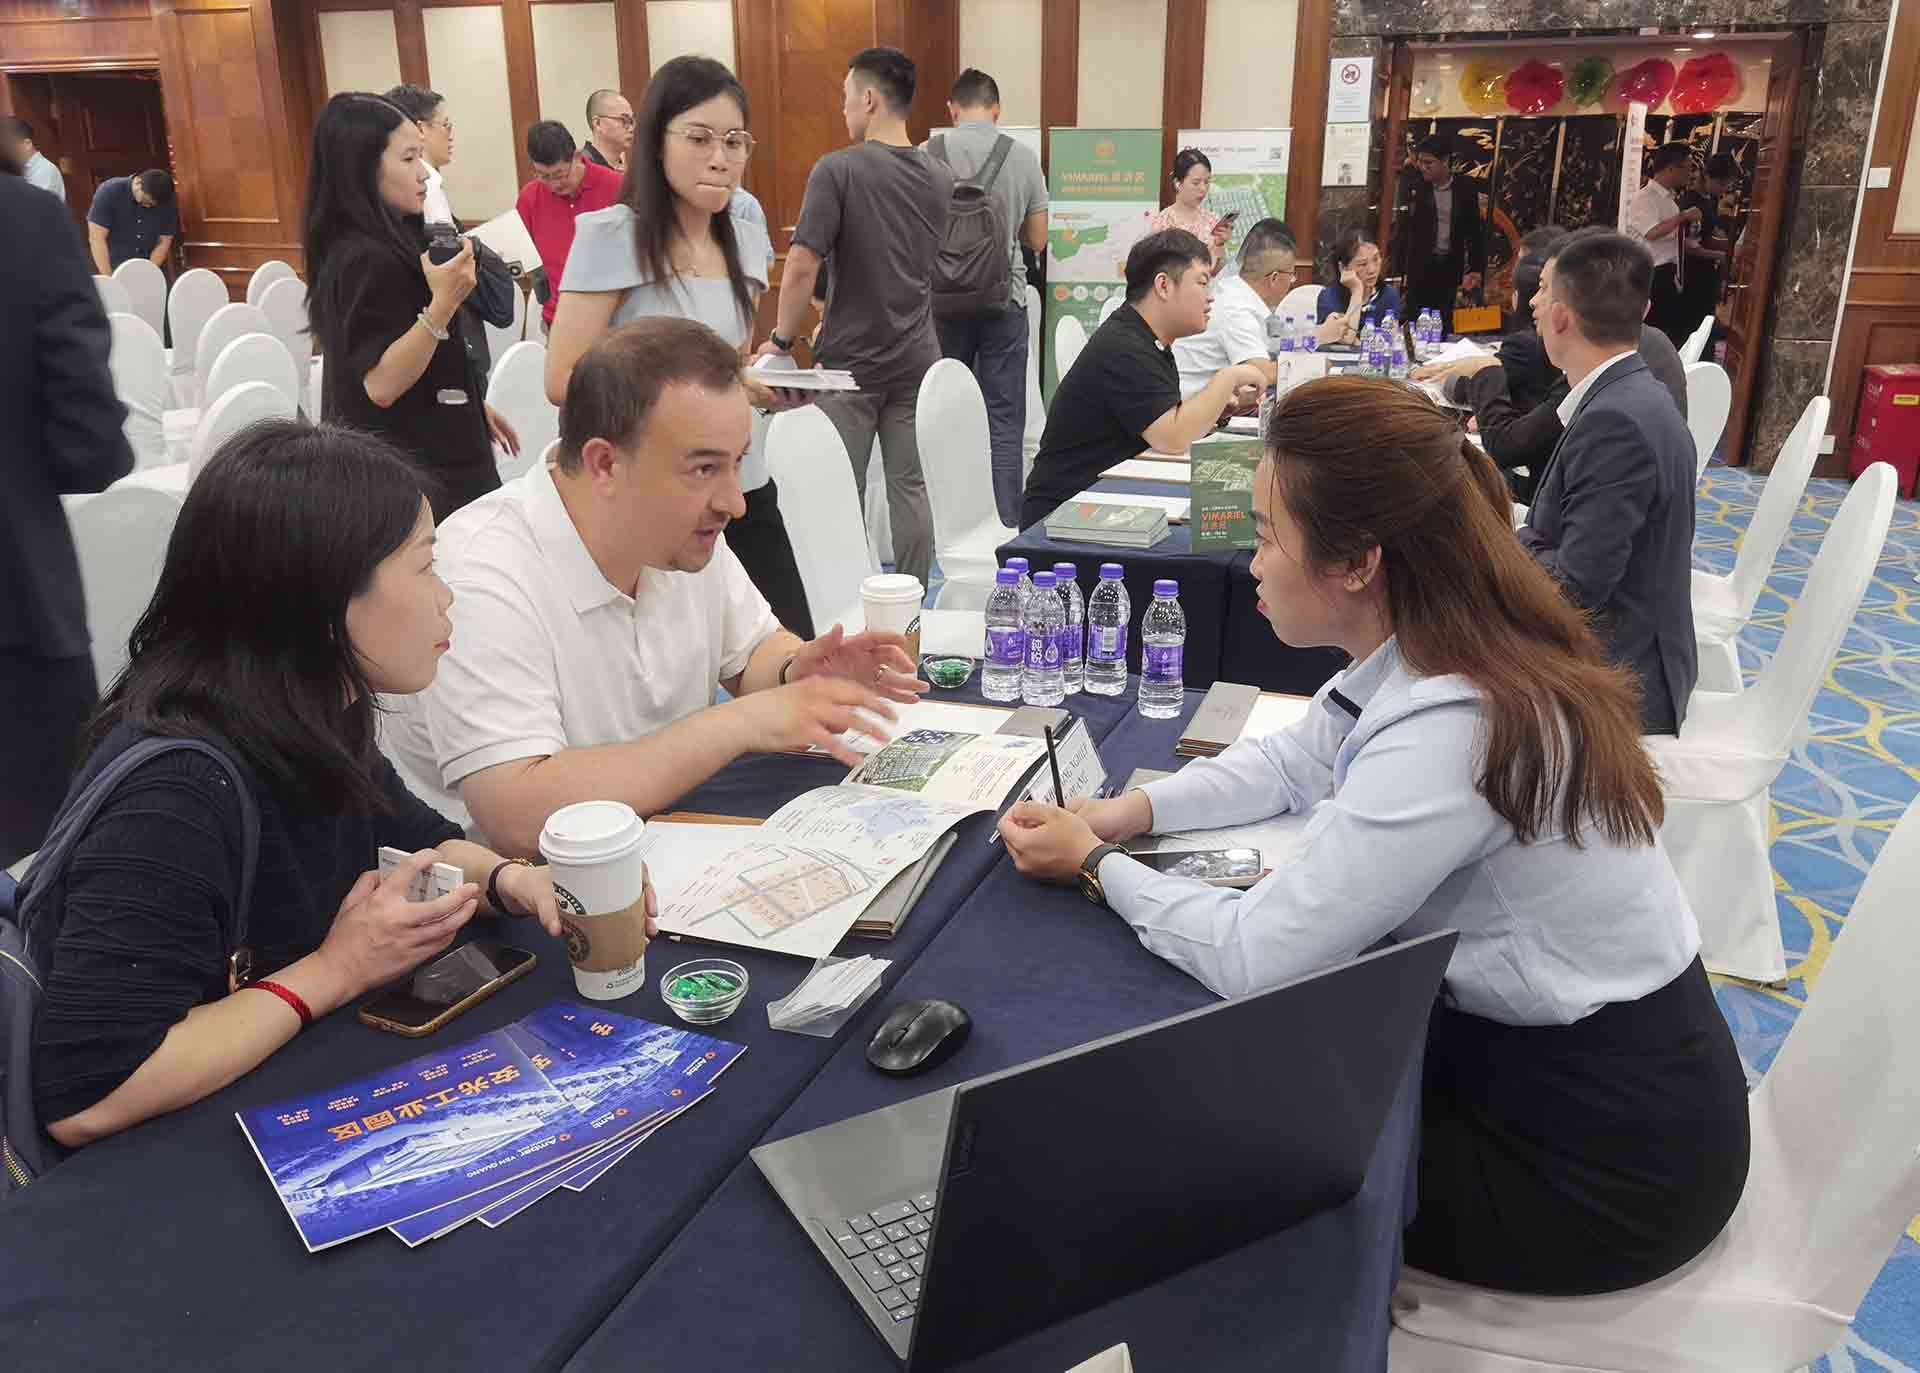 Đẩy mạnh hợp tác kinh tế-thương mại và đầu tư với tỉnh Chiết Giang, Trung Quốc